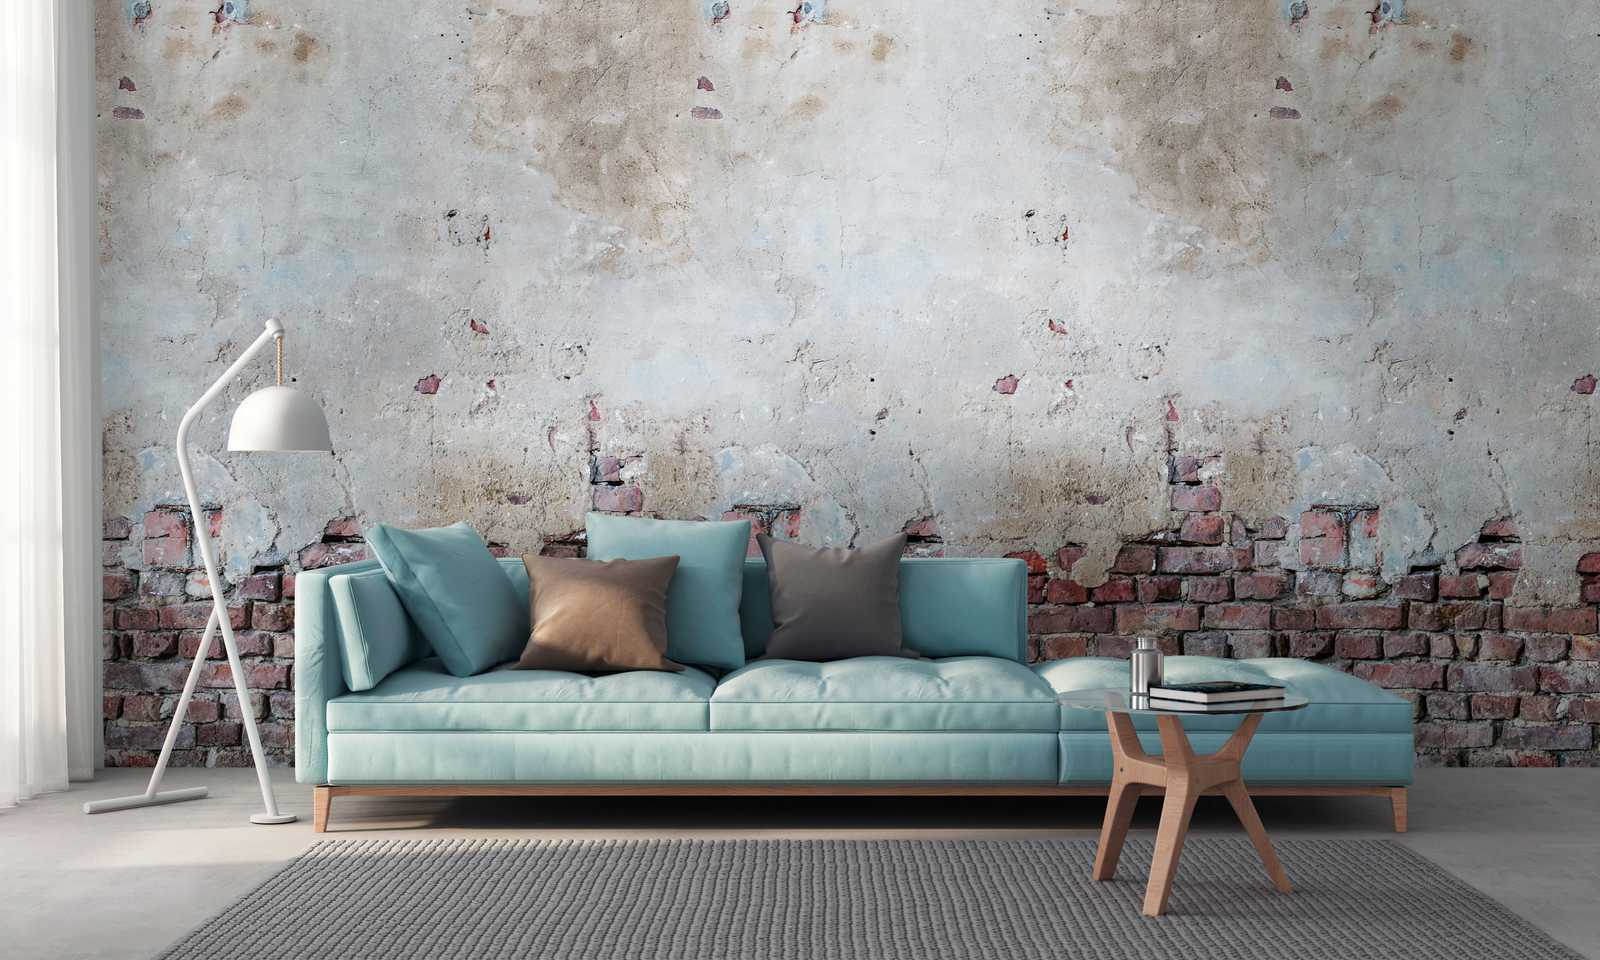             Wallpaper novelty - motif wallpaper industrial look plaster & brick wall
        